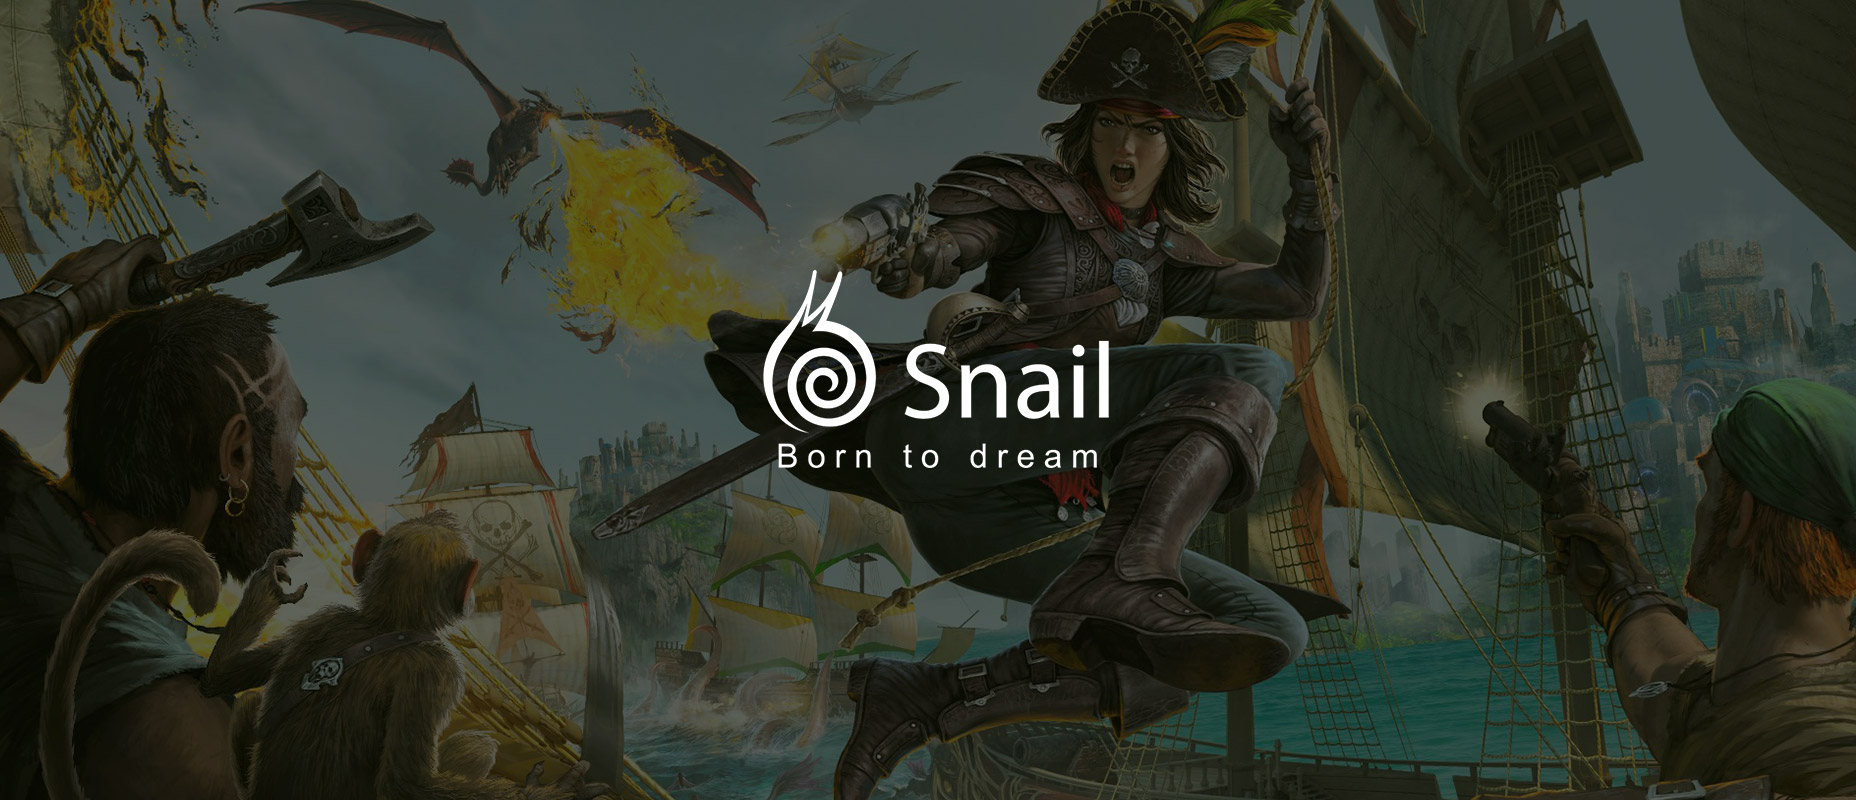 IPO společnosti Snail: Investice do herního průmyslu